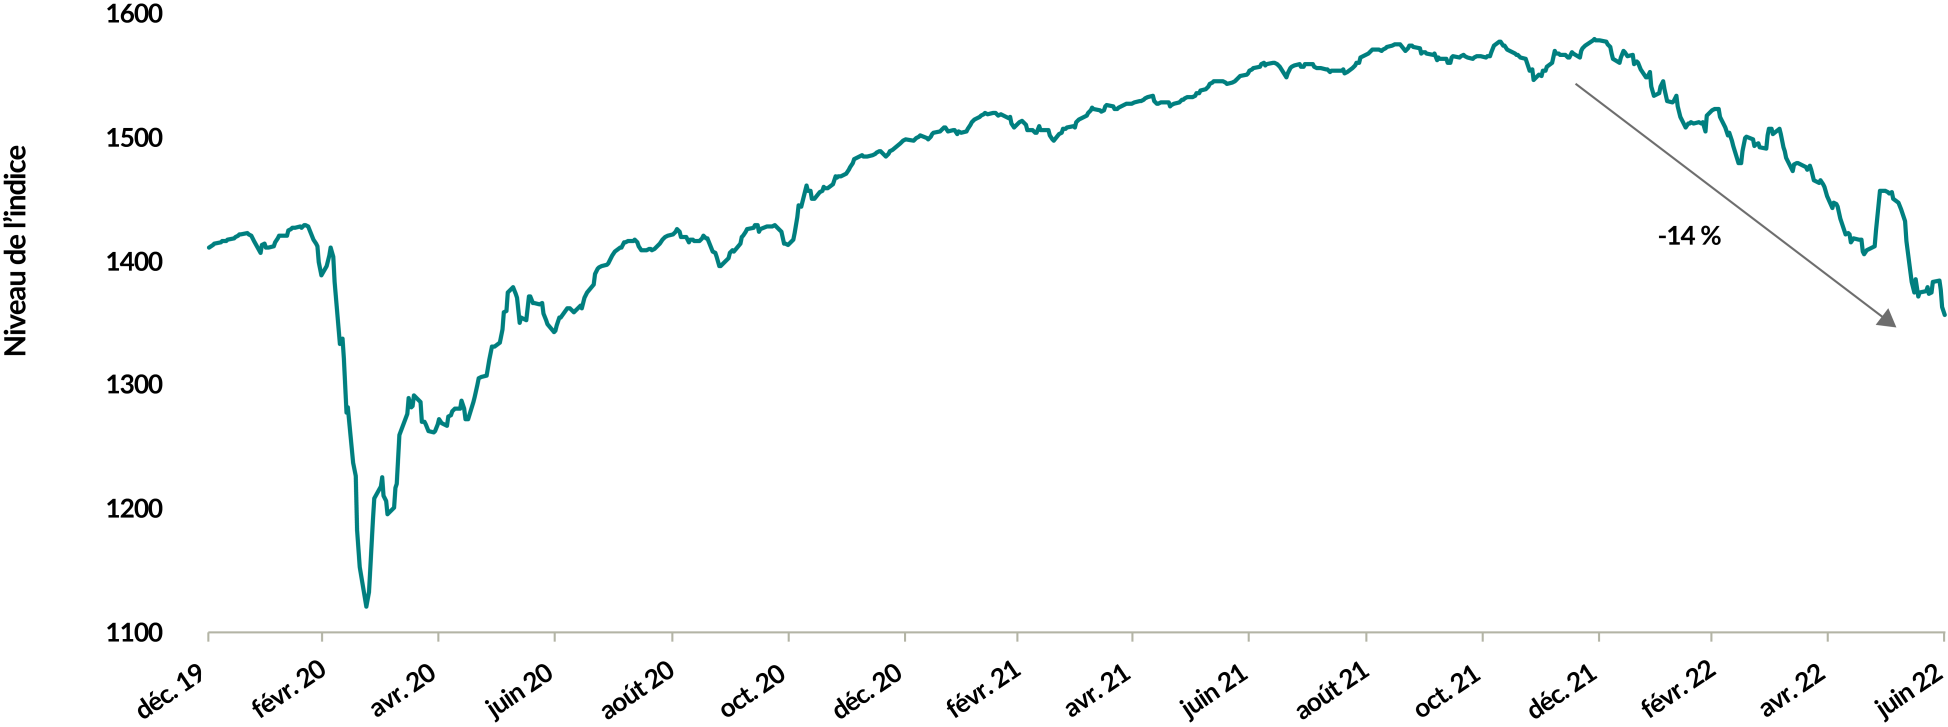 Un graphique montrant le niveau de l'indice ICE BofA US High Yield du 1er janvier 2020 au 30 juin 2022. La valeur de départ était d'environ 1 400, a chuté à environ 1 100 en mars 2020, a augmenté régulièrement vers 1 600 vers la fin de 2020, puis a chuté de 14 % à 1 360 à la fin de juin 2021.